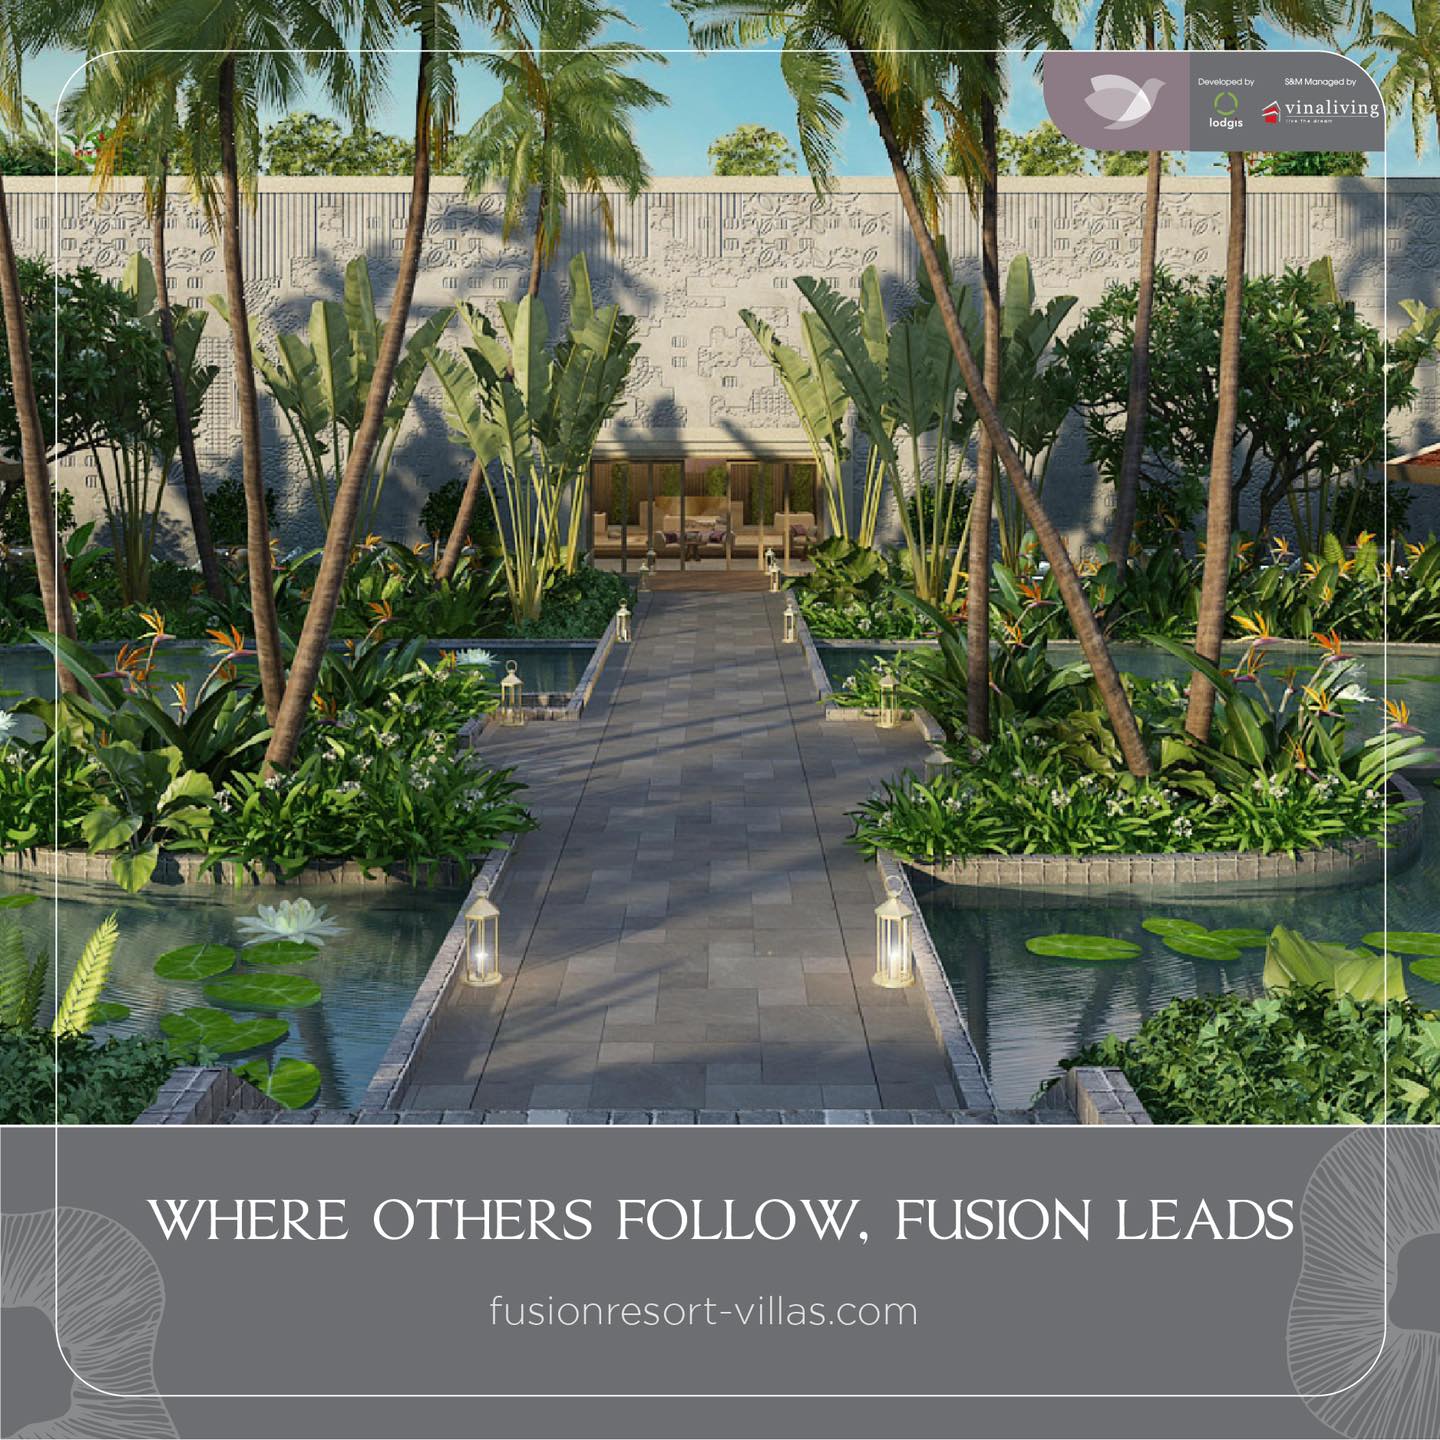 Cuộc sống đỉnh cao với những giá trị nổi bật tại Fusion Resort & Villas Đà Nẵng - Ảnh 1